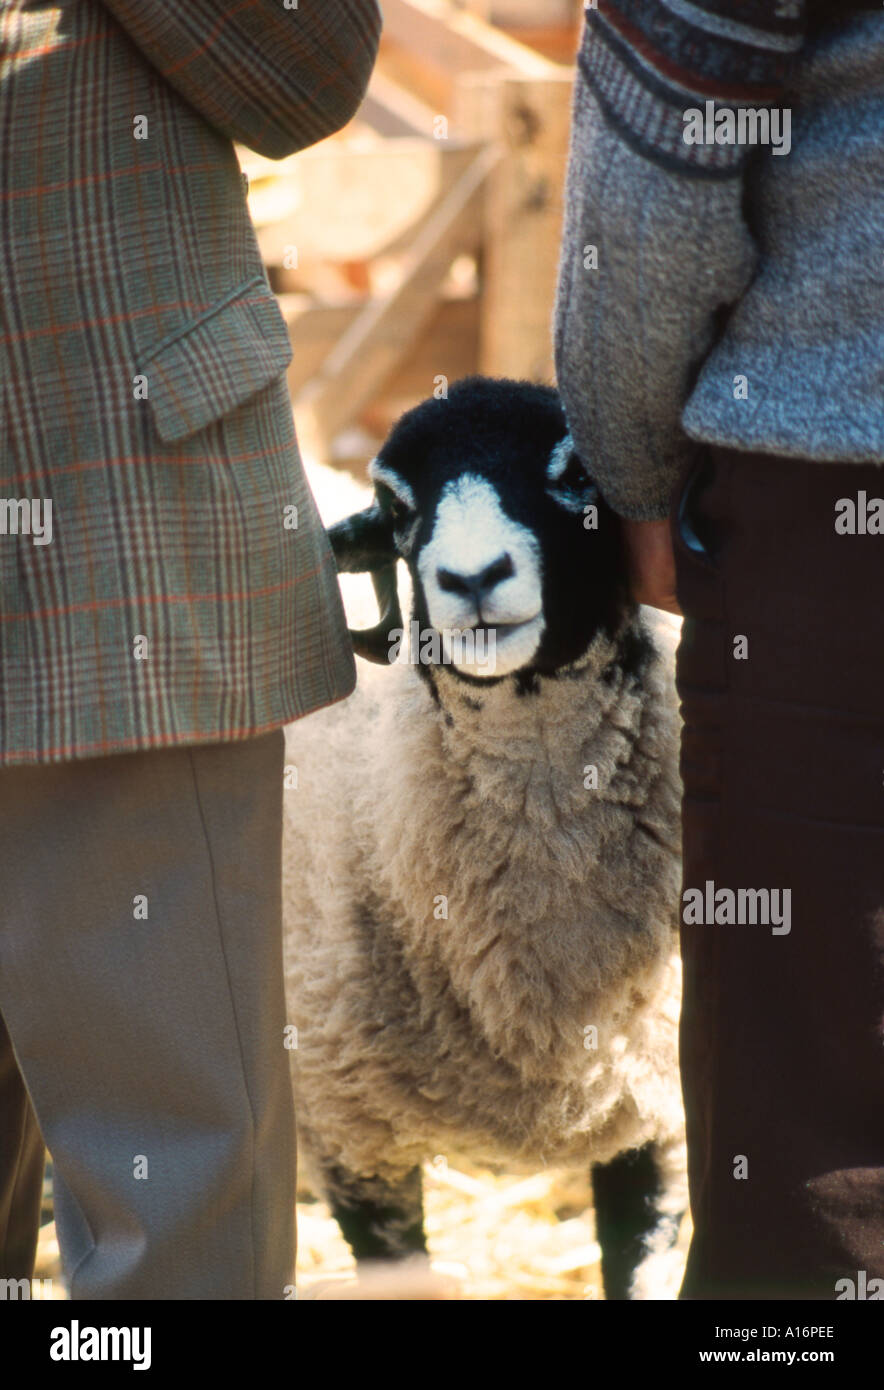 Un mouton regardant la caméra entre deux agriculteurs au salon de l'agriculture équitable Moutons Masham, Yorkshire, Angleterre Royaume-uni Banque D'Images